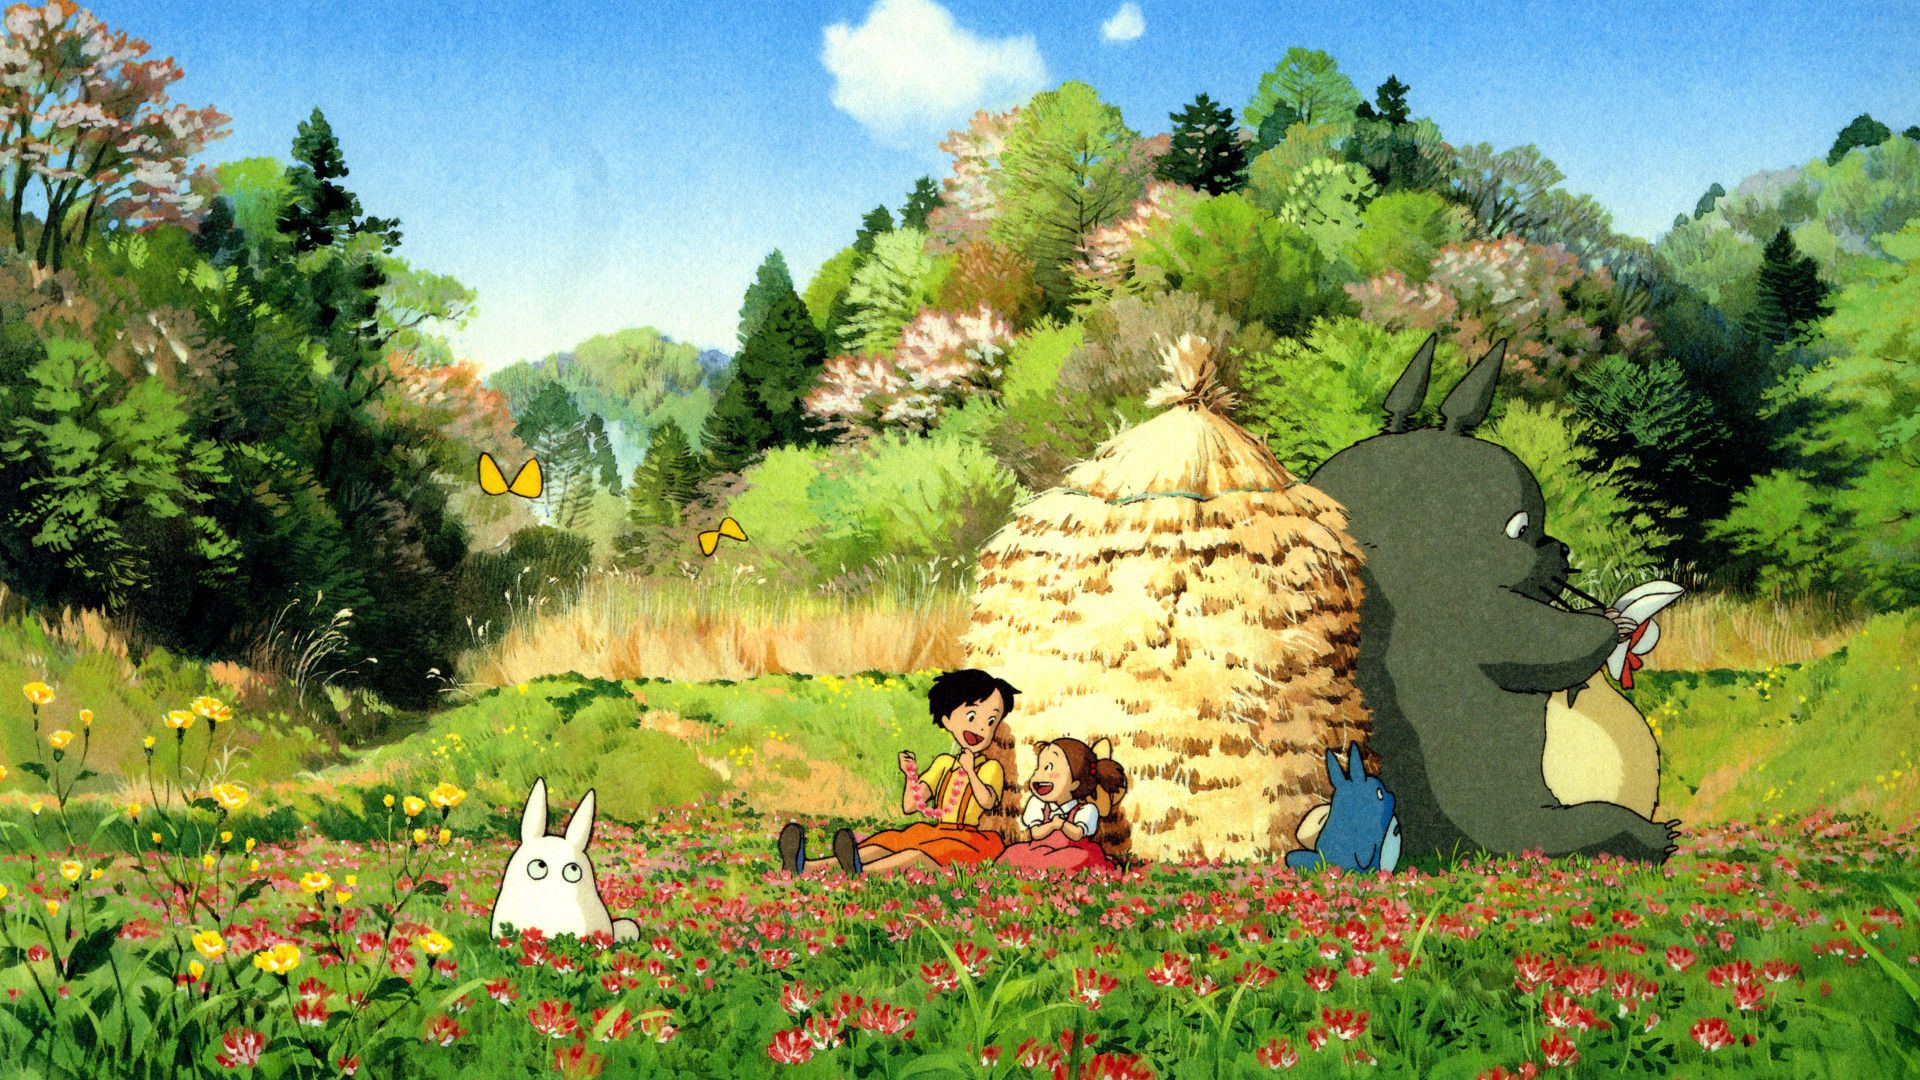 My Neighbor Totoro background